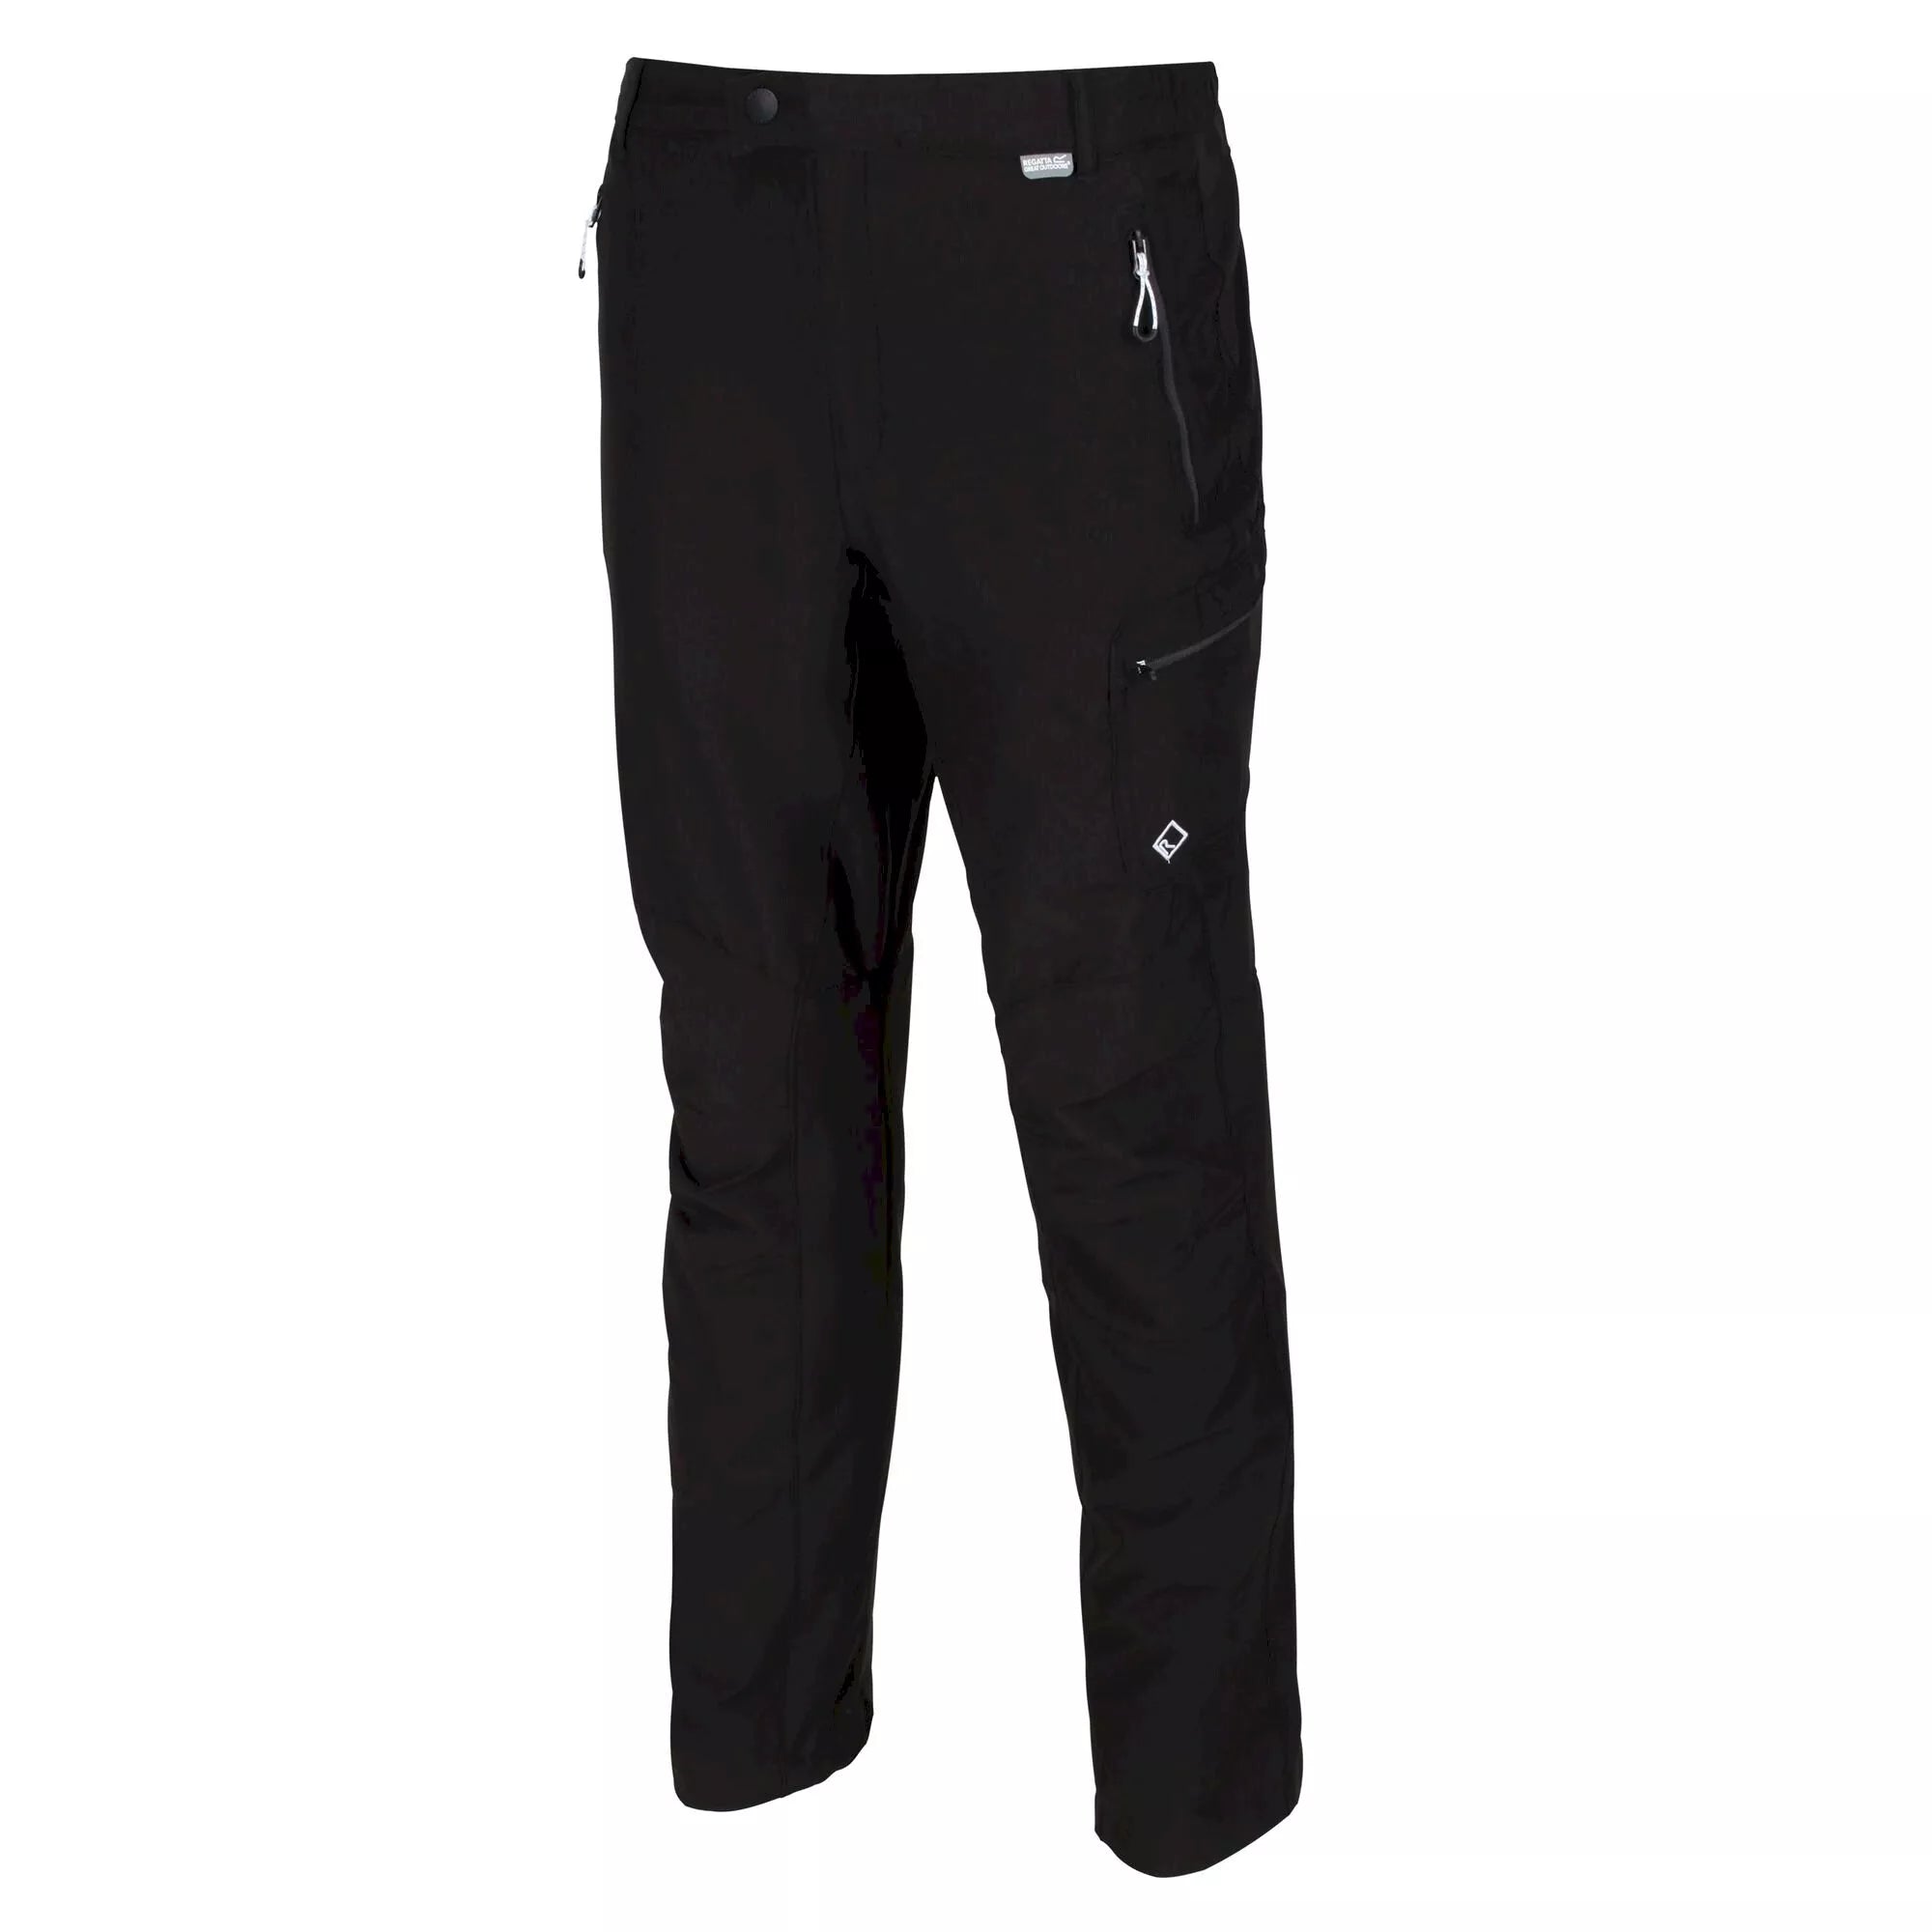 Men's Geo II Softshell Walking Trousers - Black | Regatta UK